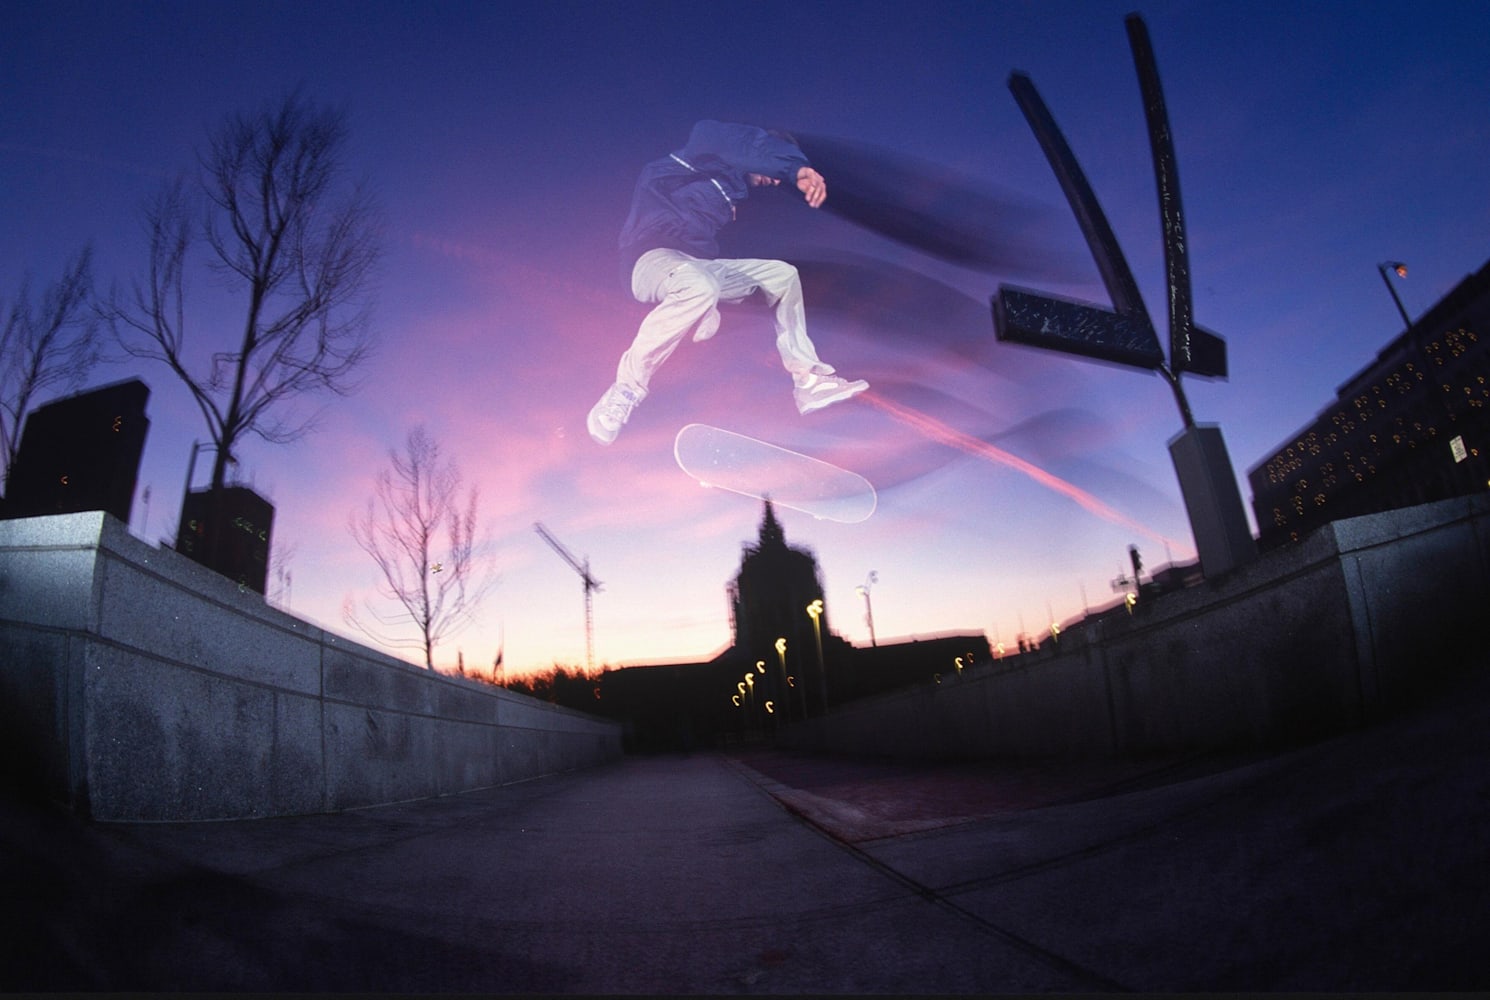 2015.3.4 | マイク・ブラバックが捉えたスケートシーン | Skateboarding